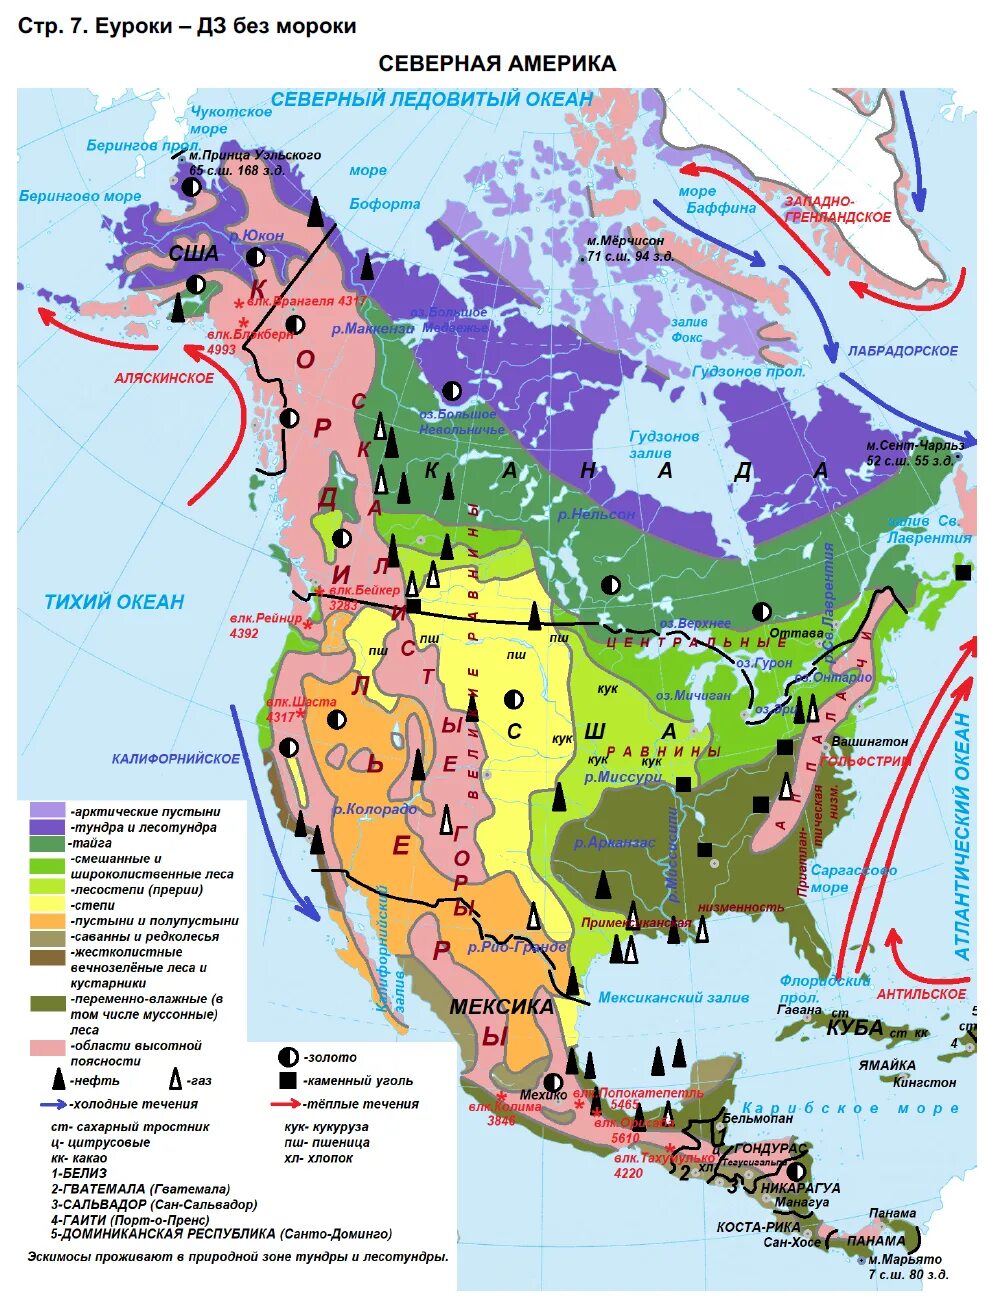 Гдз по географии 7 класс контурные карты Северная Америка. Контурная карта 7 класс география Северная Америка страница 7. Контурная карта по географии 7 Северная Америка гдз. География 7 класс атлас и контурные карты гдз Северная Америка.